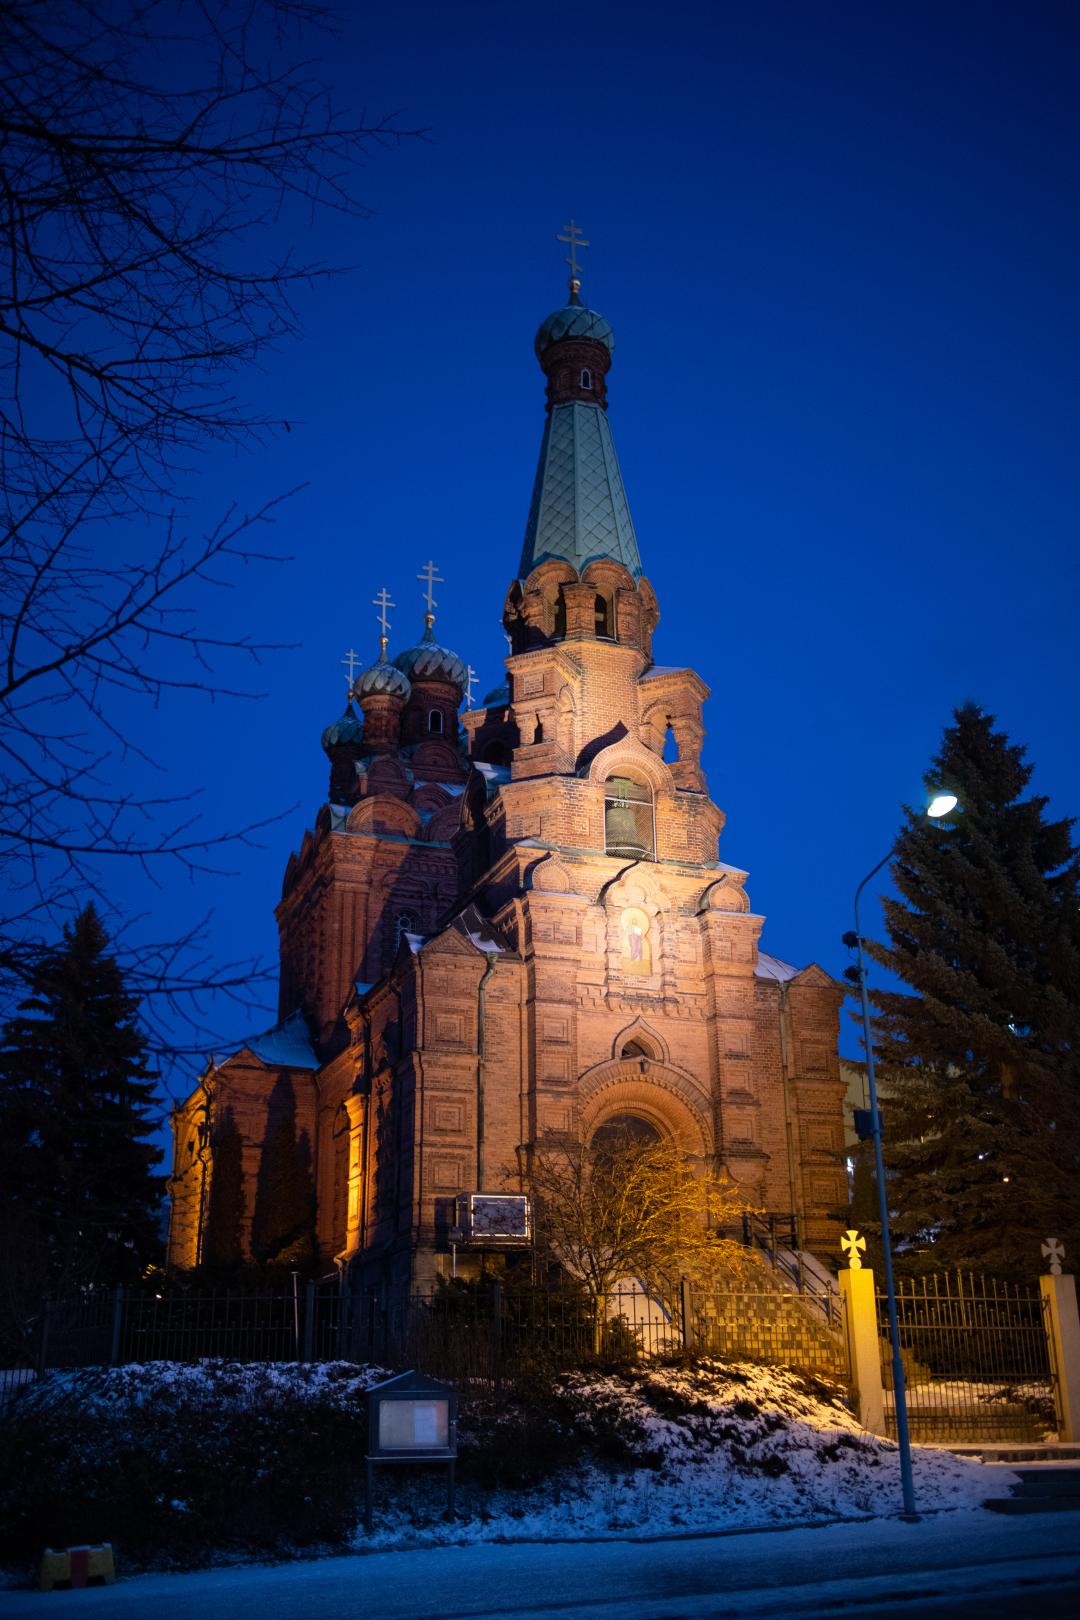 Tampereen_ortodoksikirkko_iltavalaistuksessa